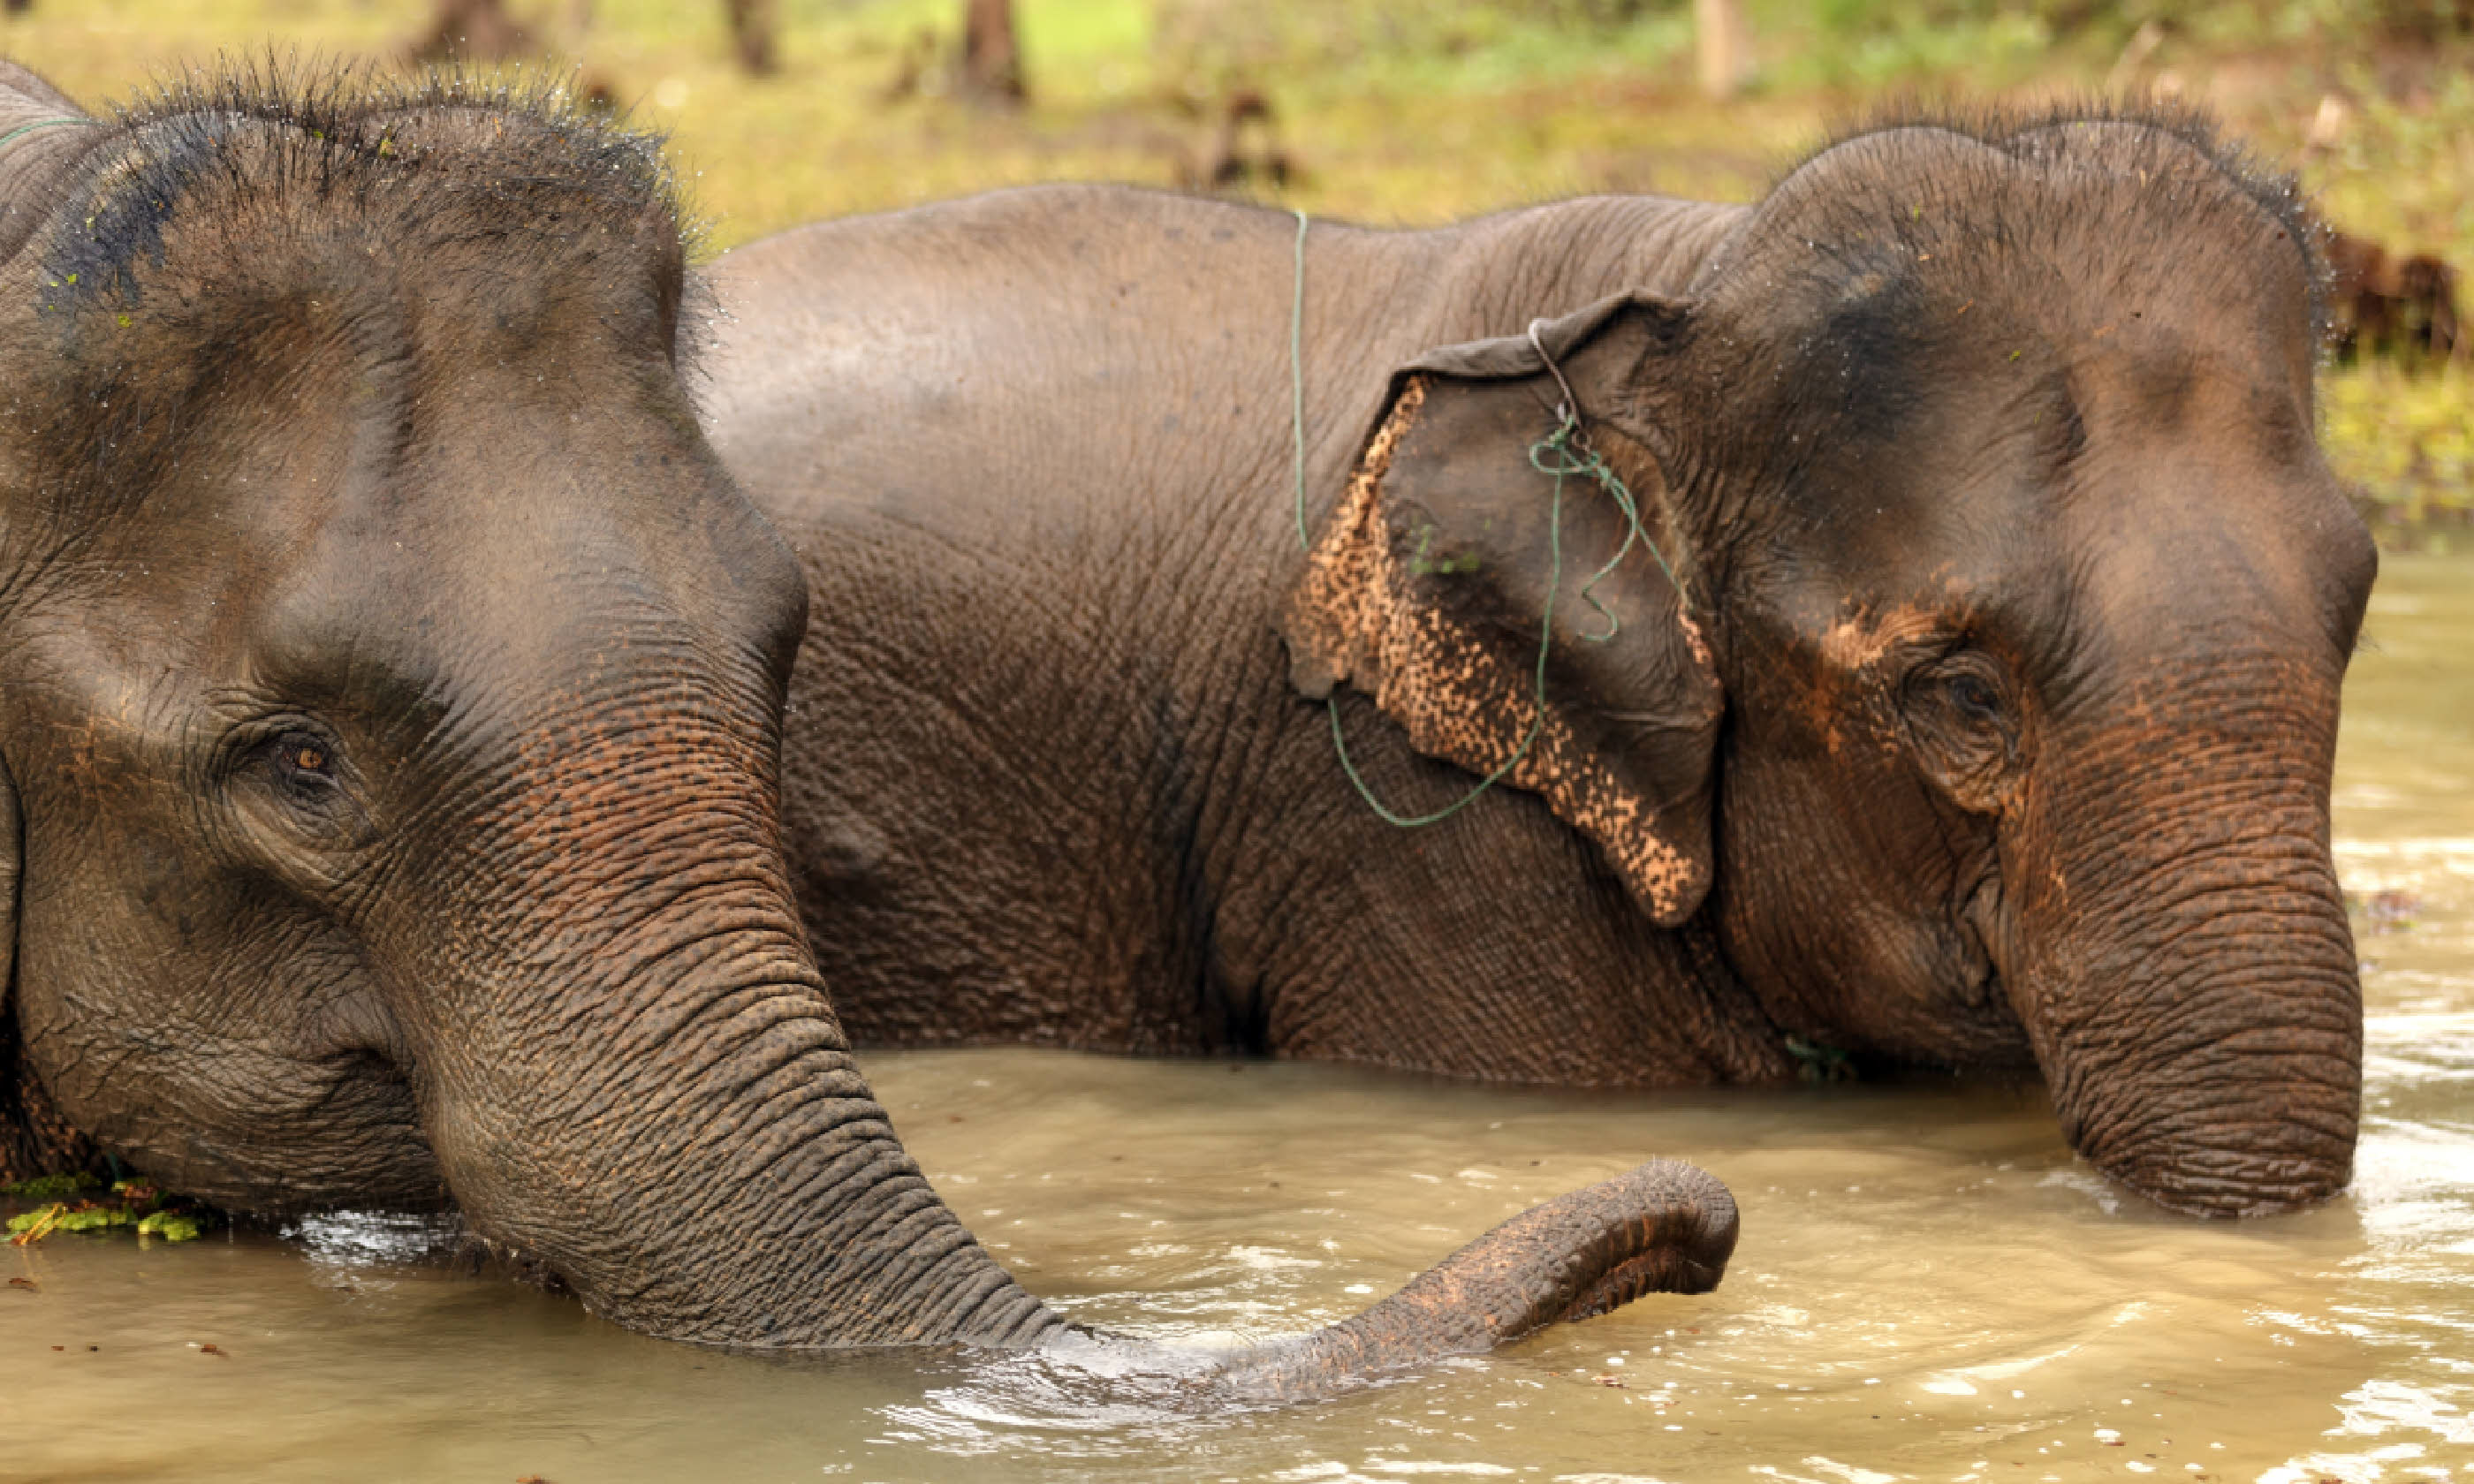 Asian elephant bathing in muddy water, Laos (Shutterstock)